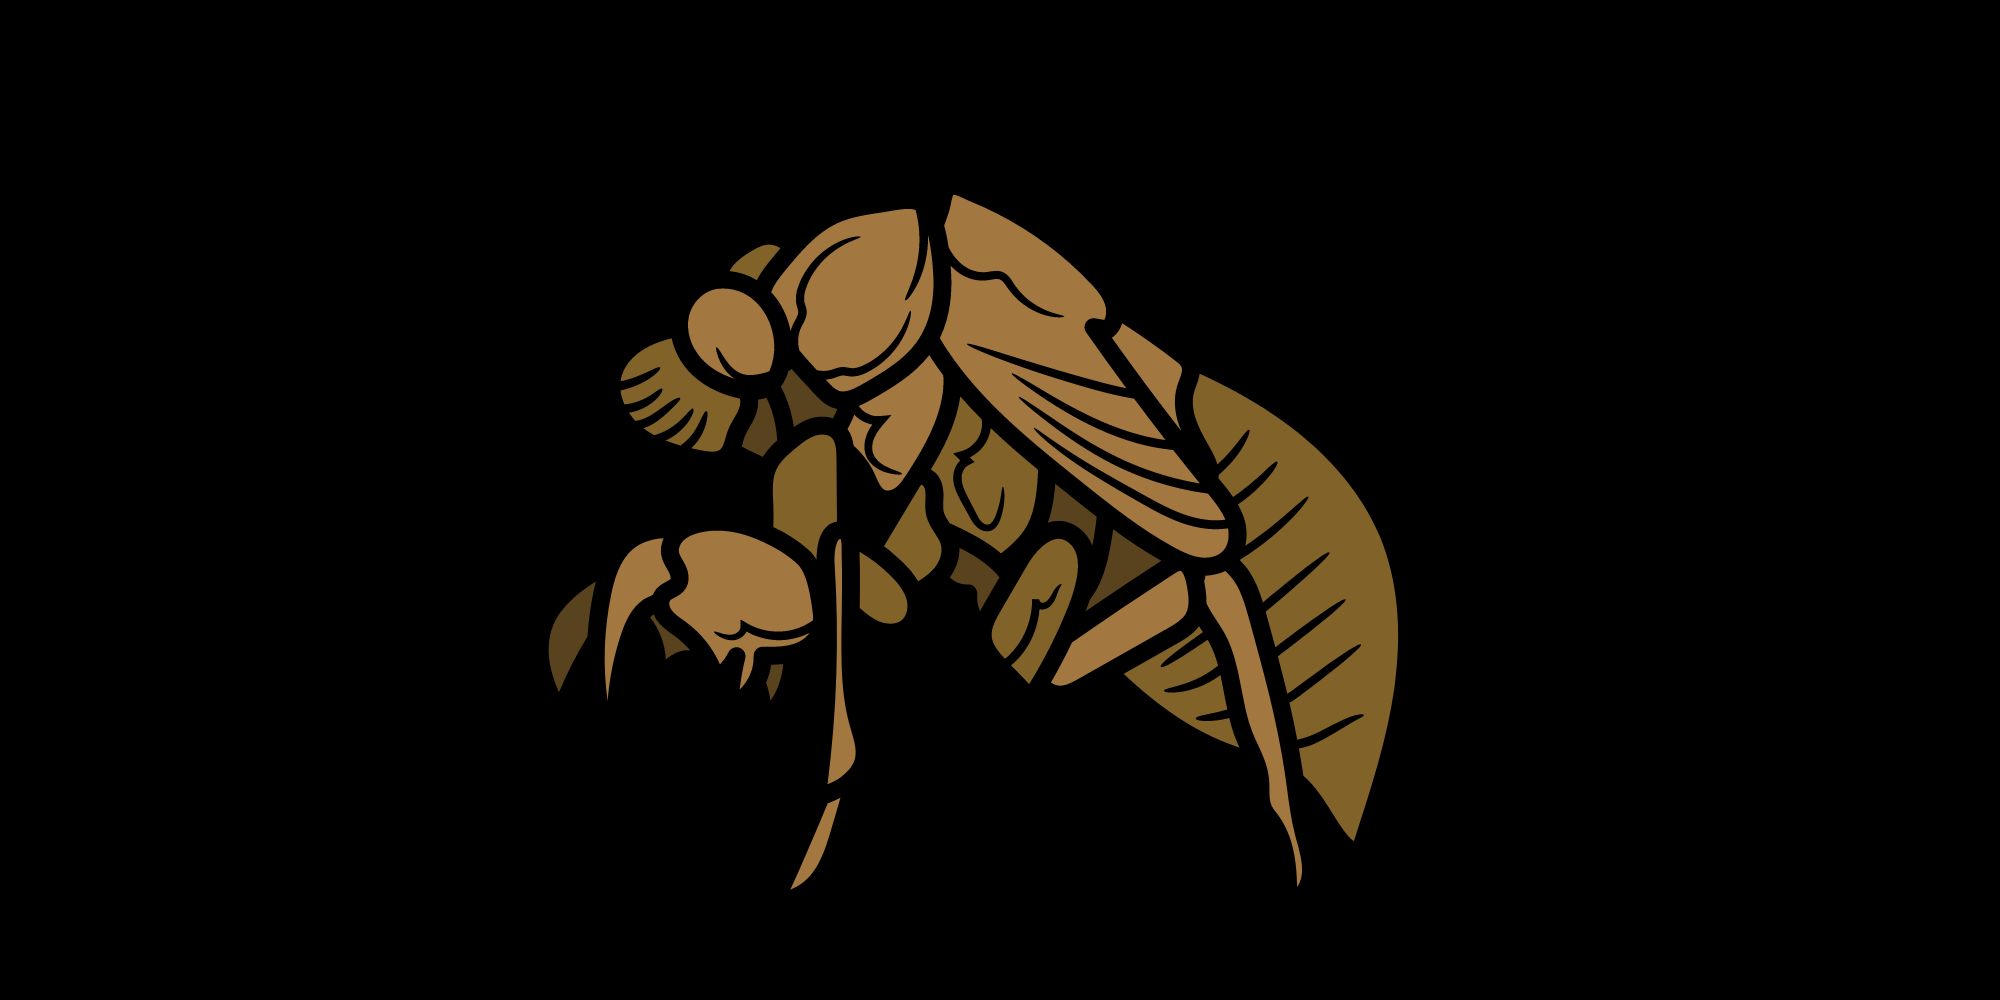 love for cicadas